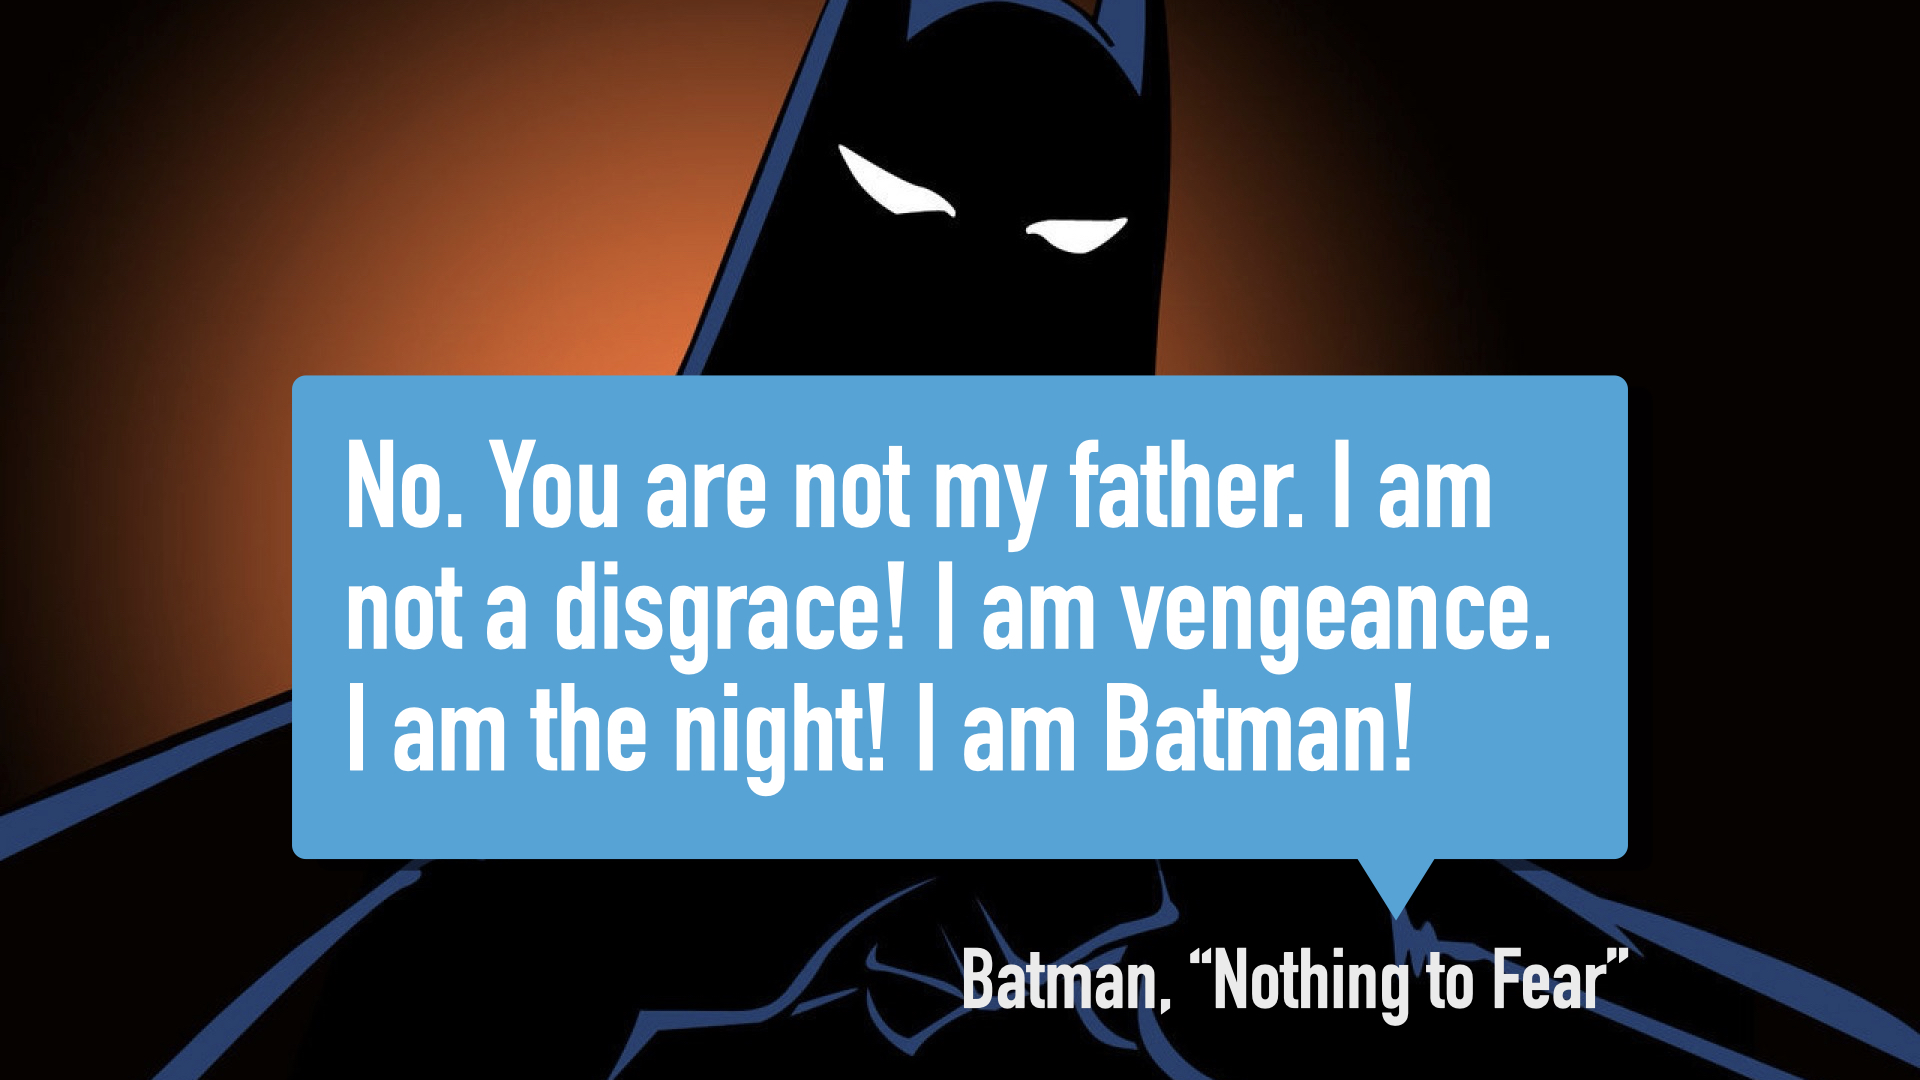 Batman declaring he is the night. He is Batman.